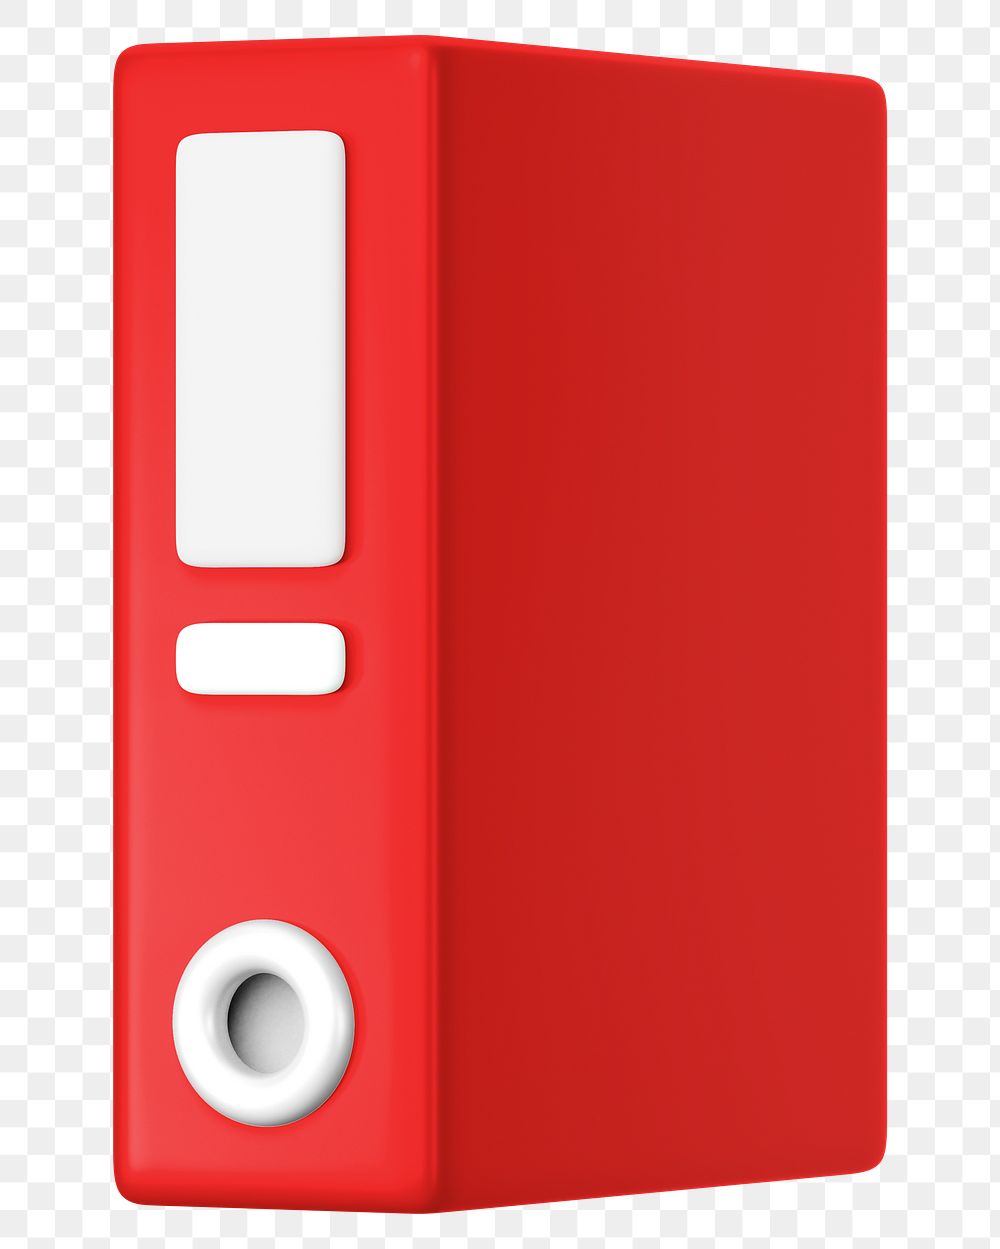 Red folder png 3D element, transparent background